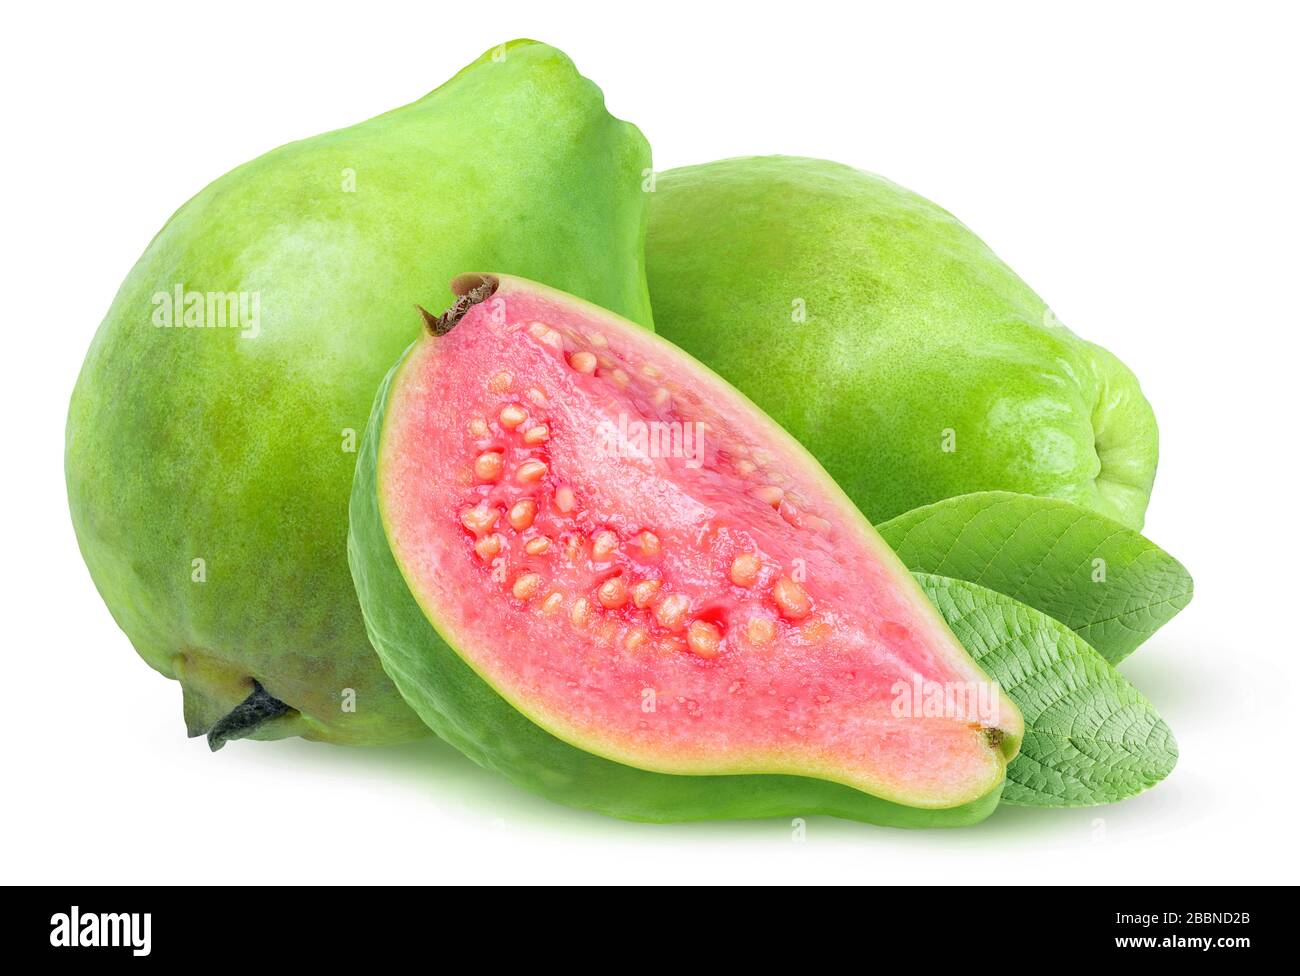 Frutti di guava isolati. Tre guave verdi con carne rosa isolato su sfondo bianco Foto Stock